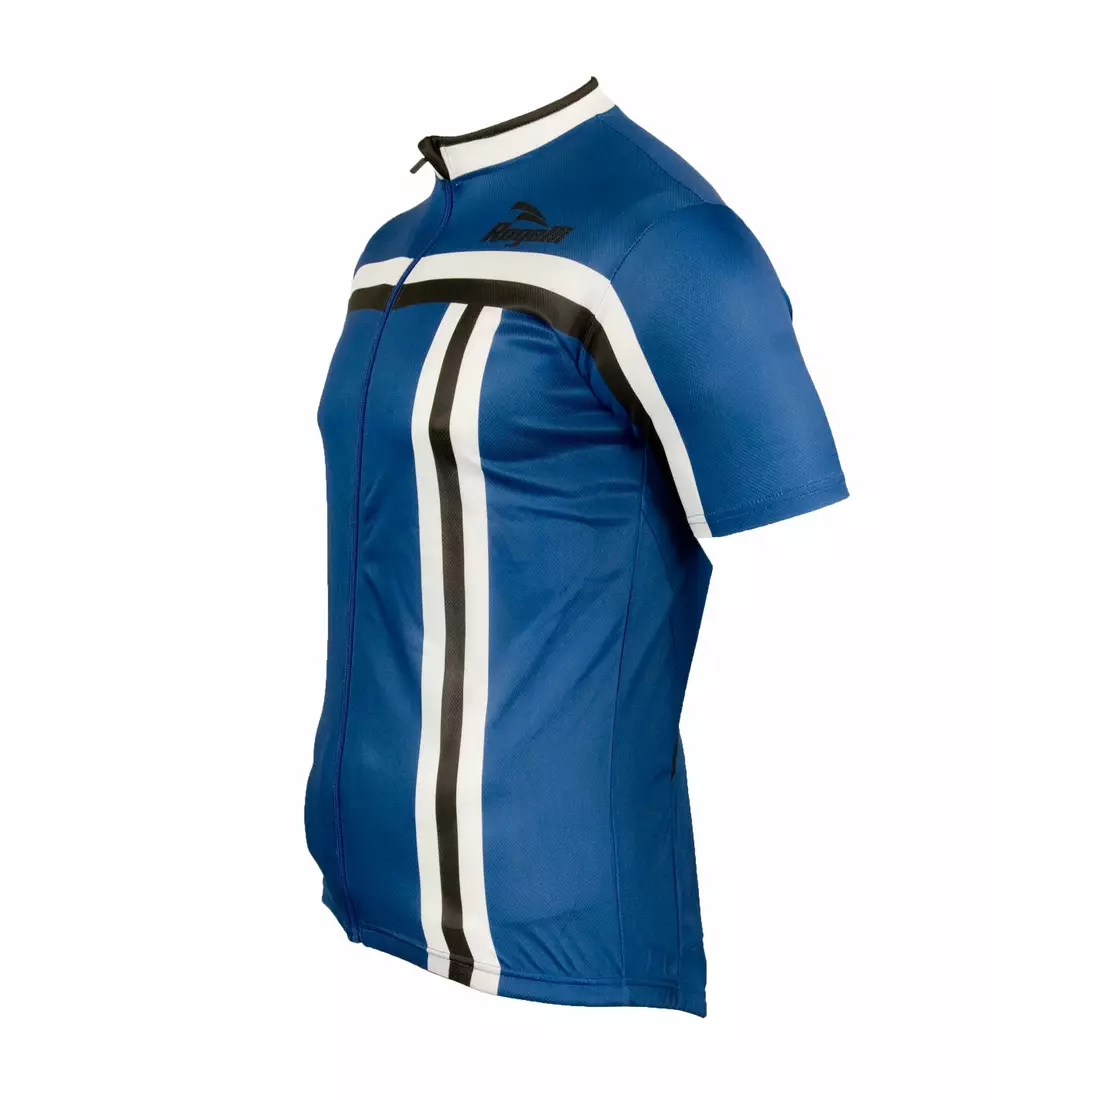 ROGELLI BRESCIA men's cycling jersey 001.065, Blue